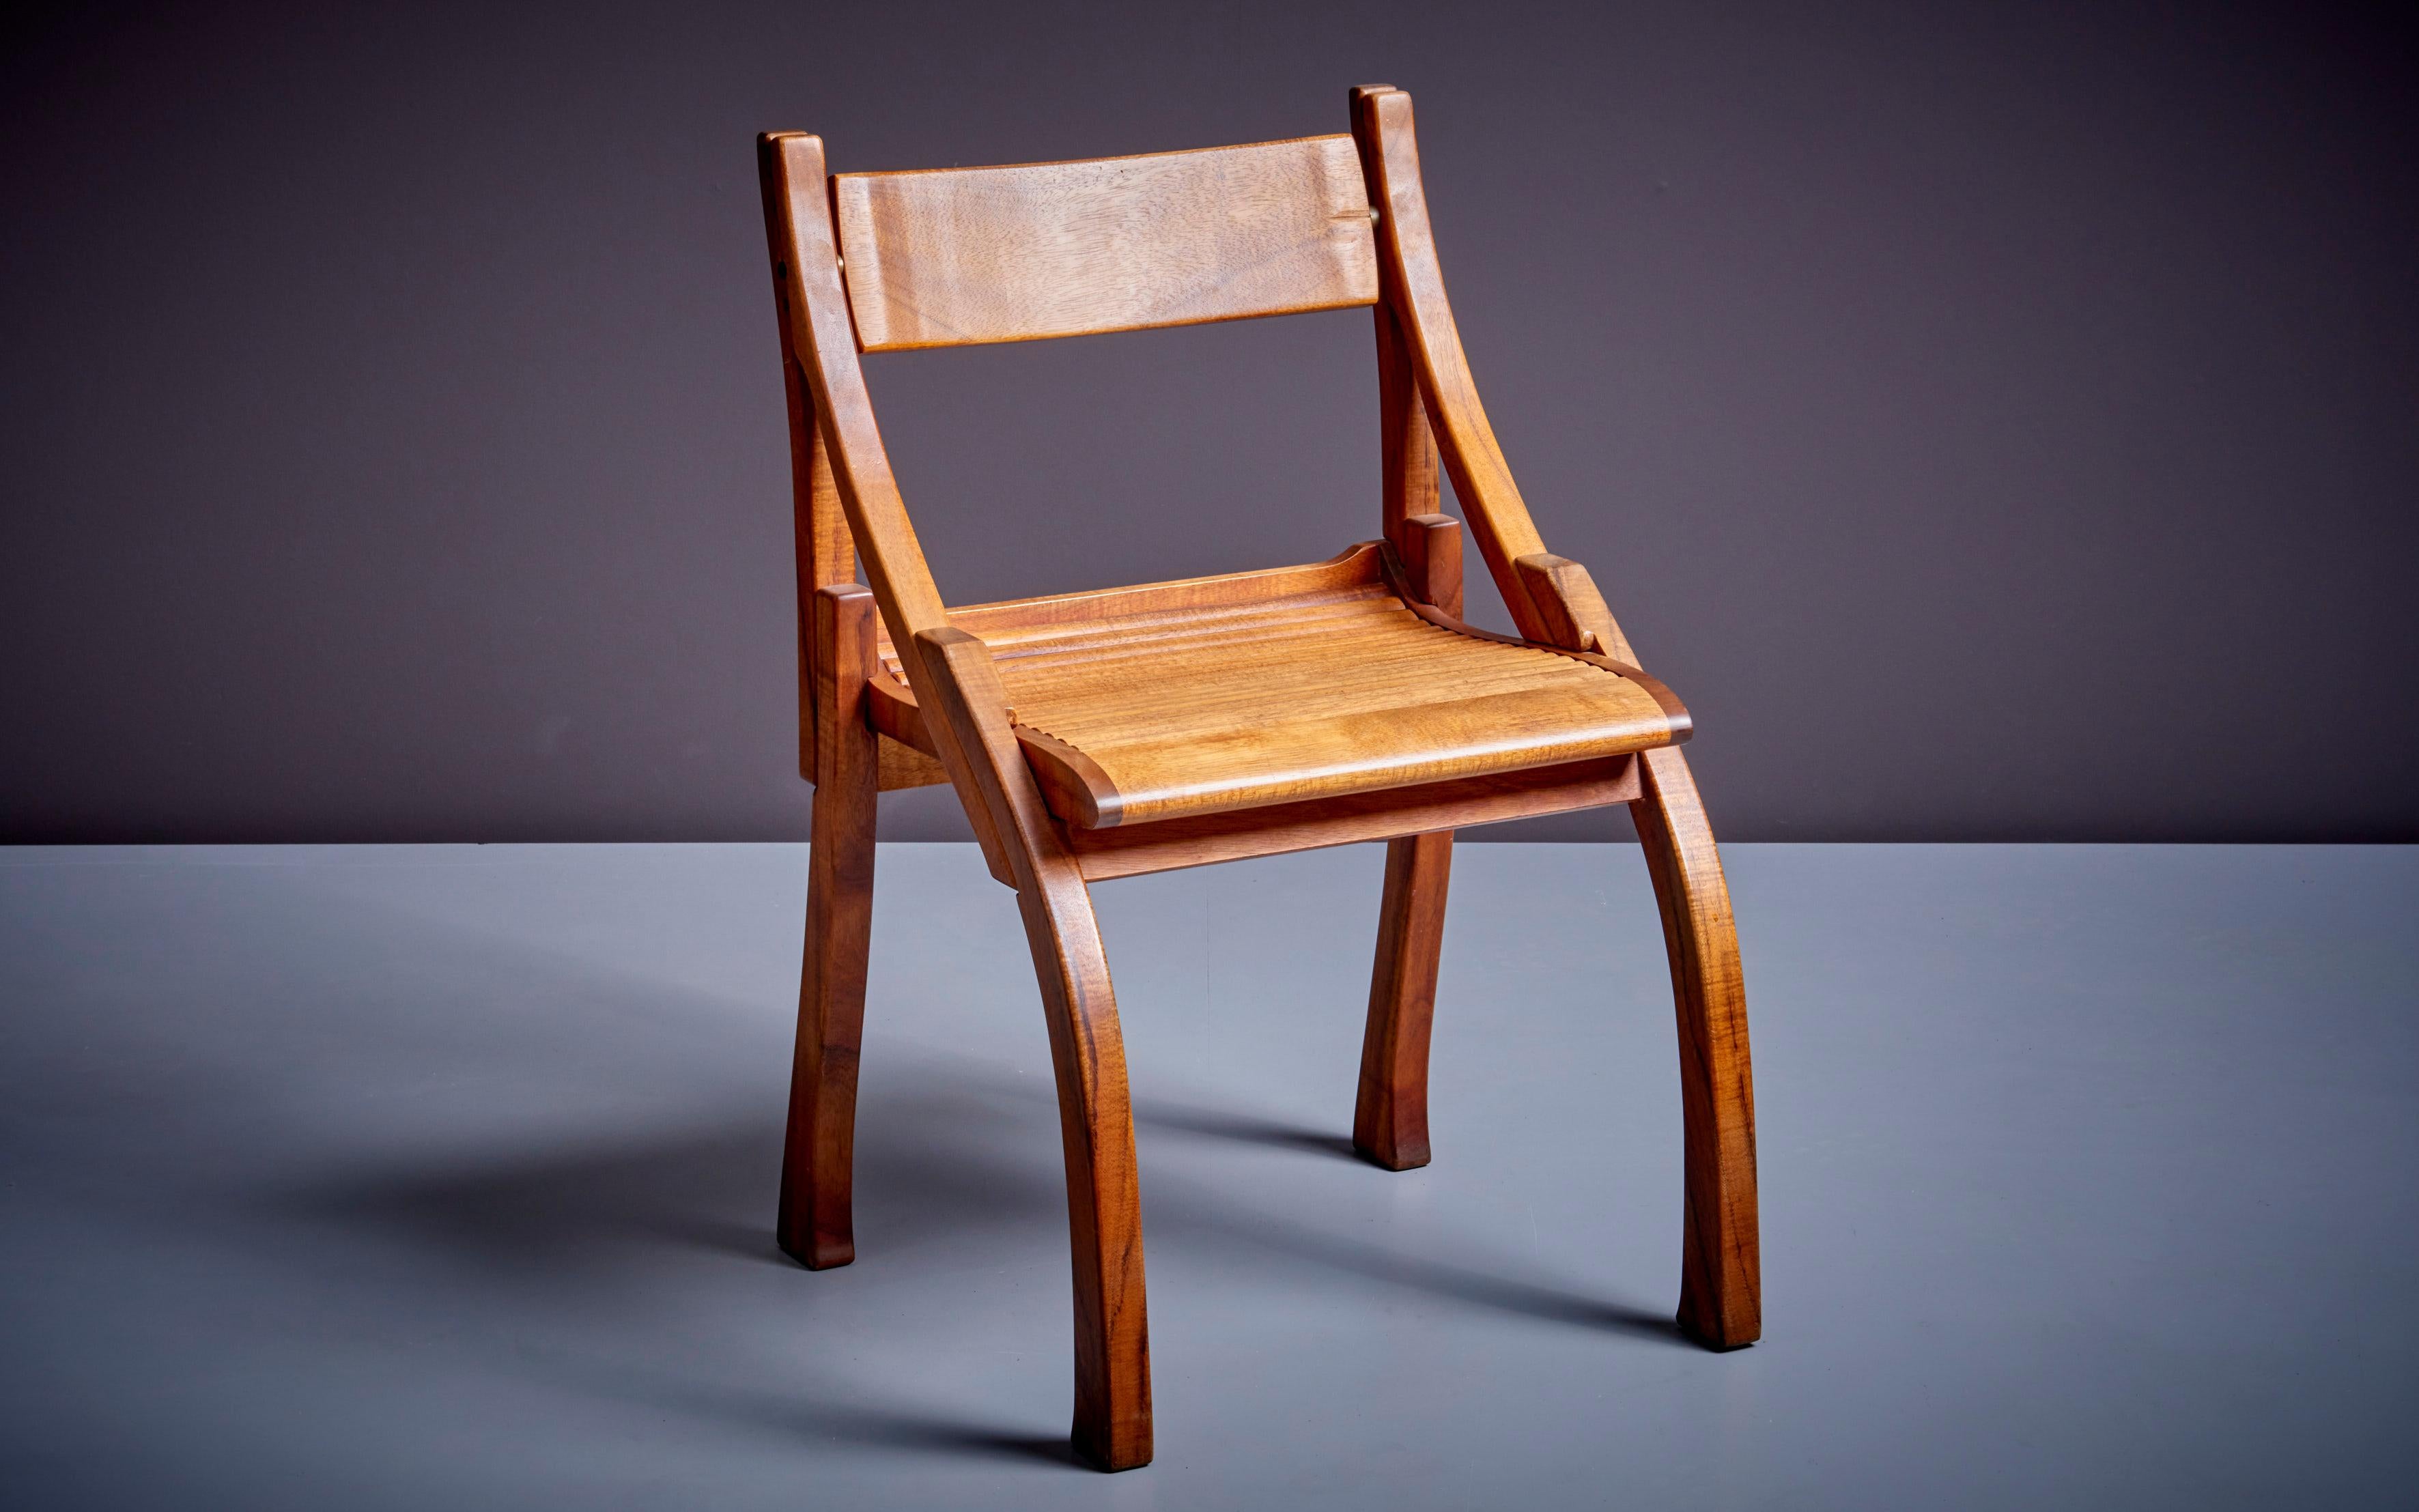 Chair with flexible backrest by Bruce Erdman in Koa Wood.